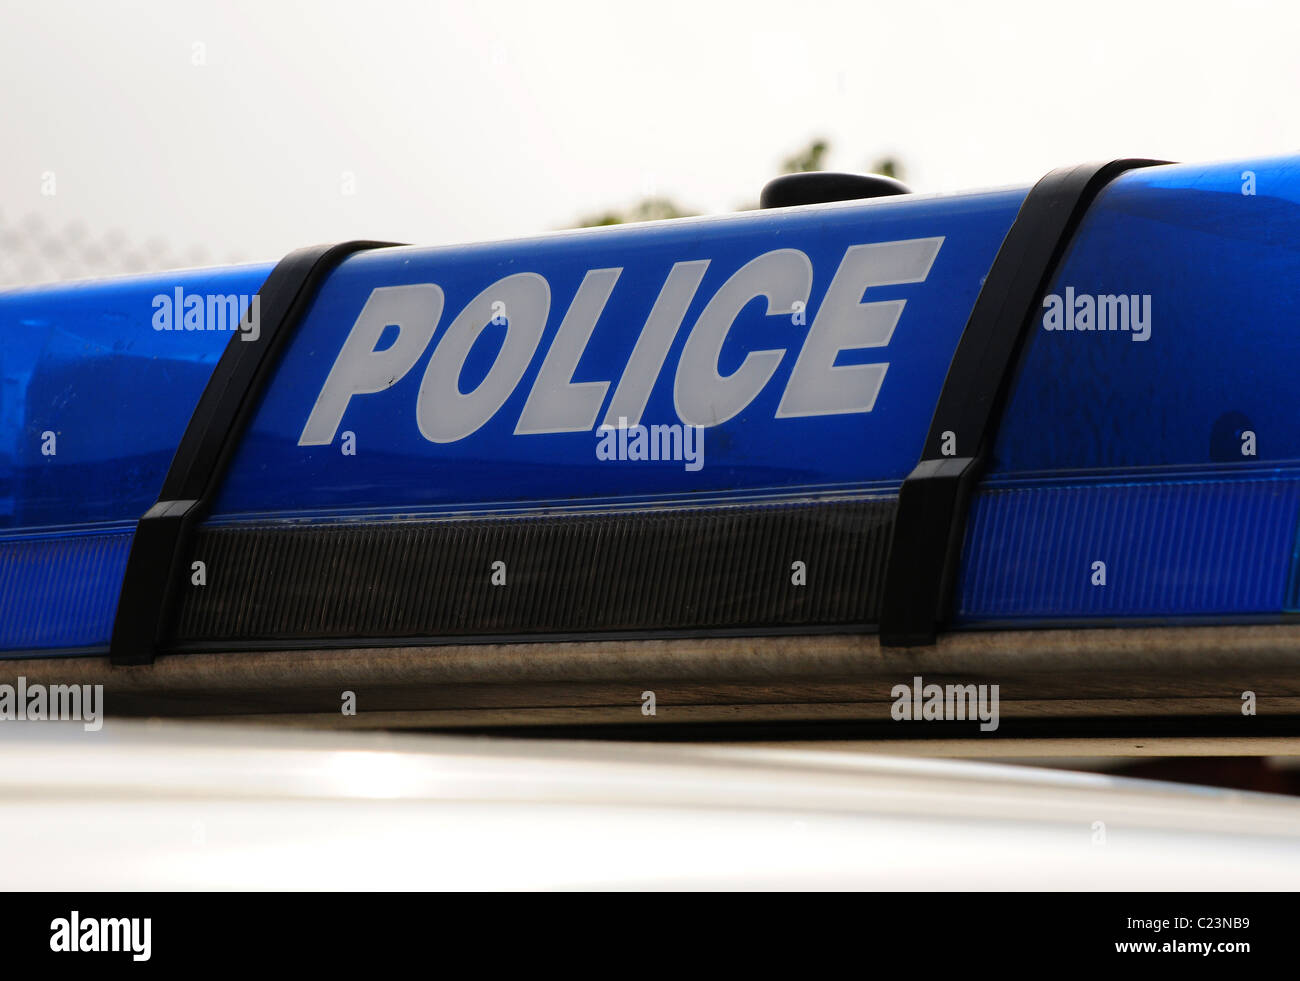 Polizei Fahrzeug leichte Array Polizei in weiß auf blauem Licht zeigen. Stockfoto